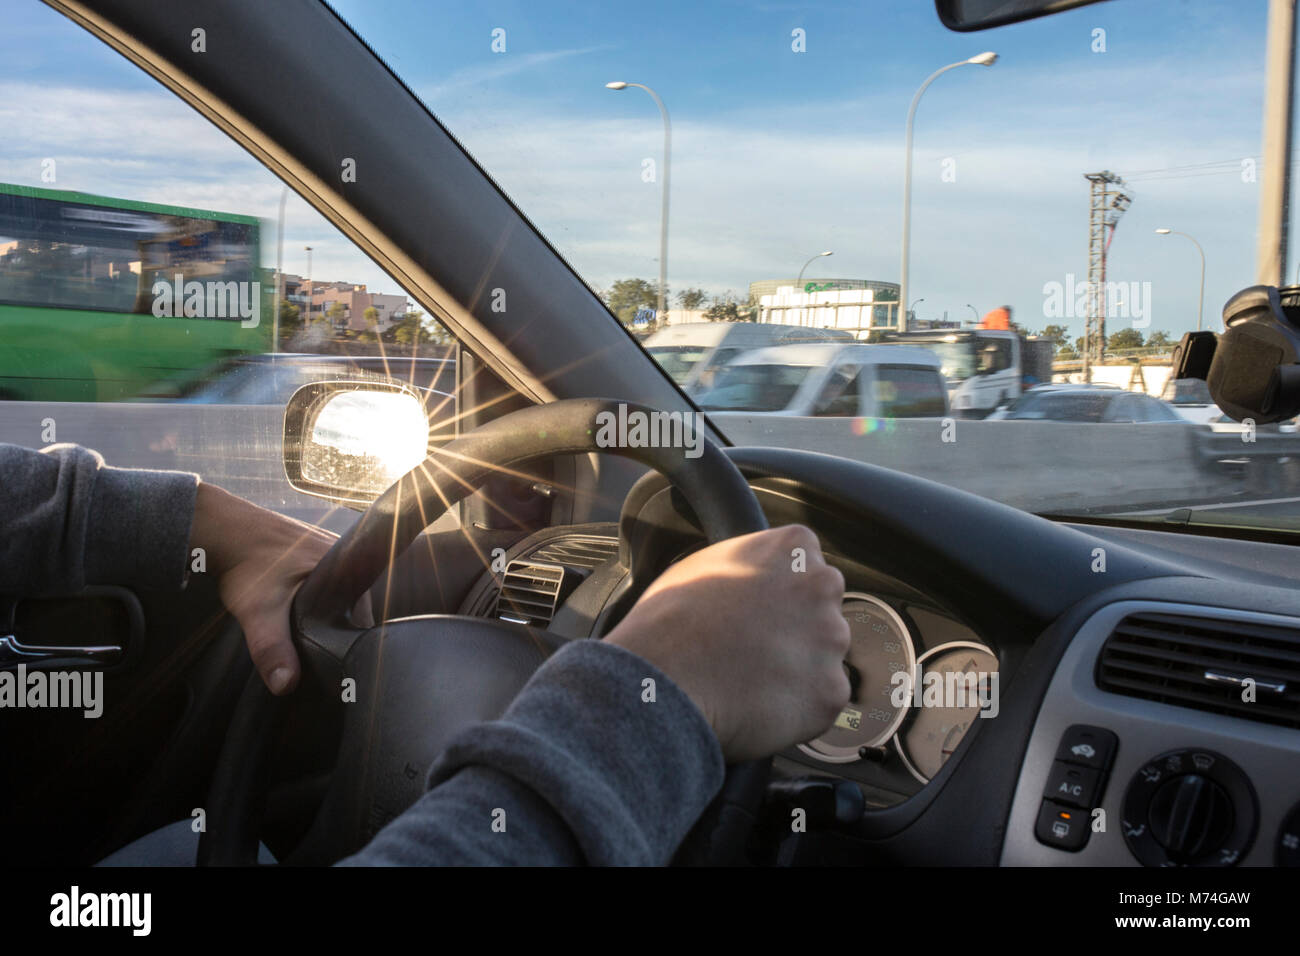 La guida con fastidiosi riflessi di sun sul retrovisore. Vista dall'interno della vettura Foto Stock